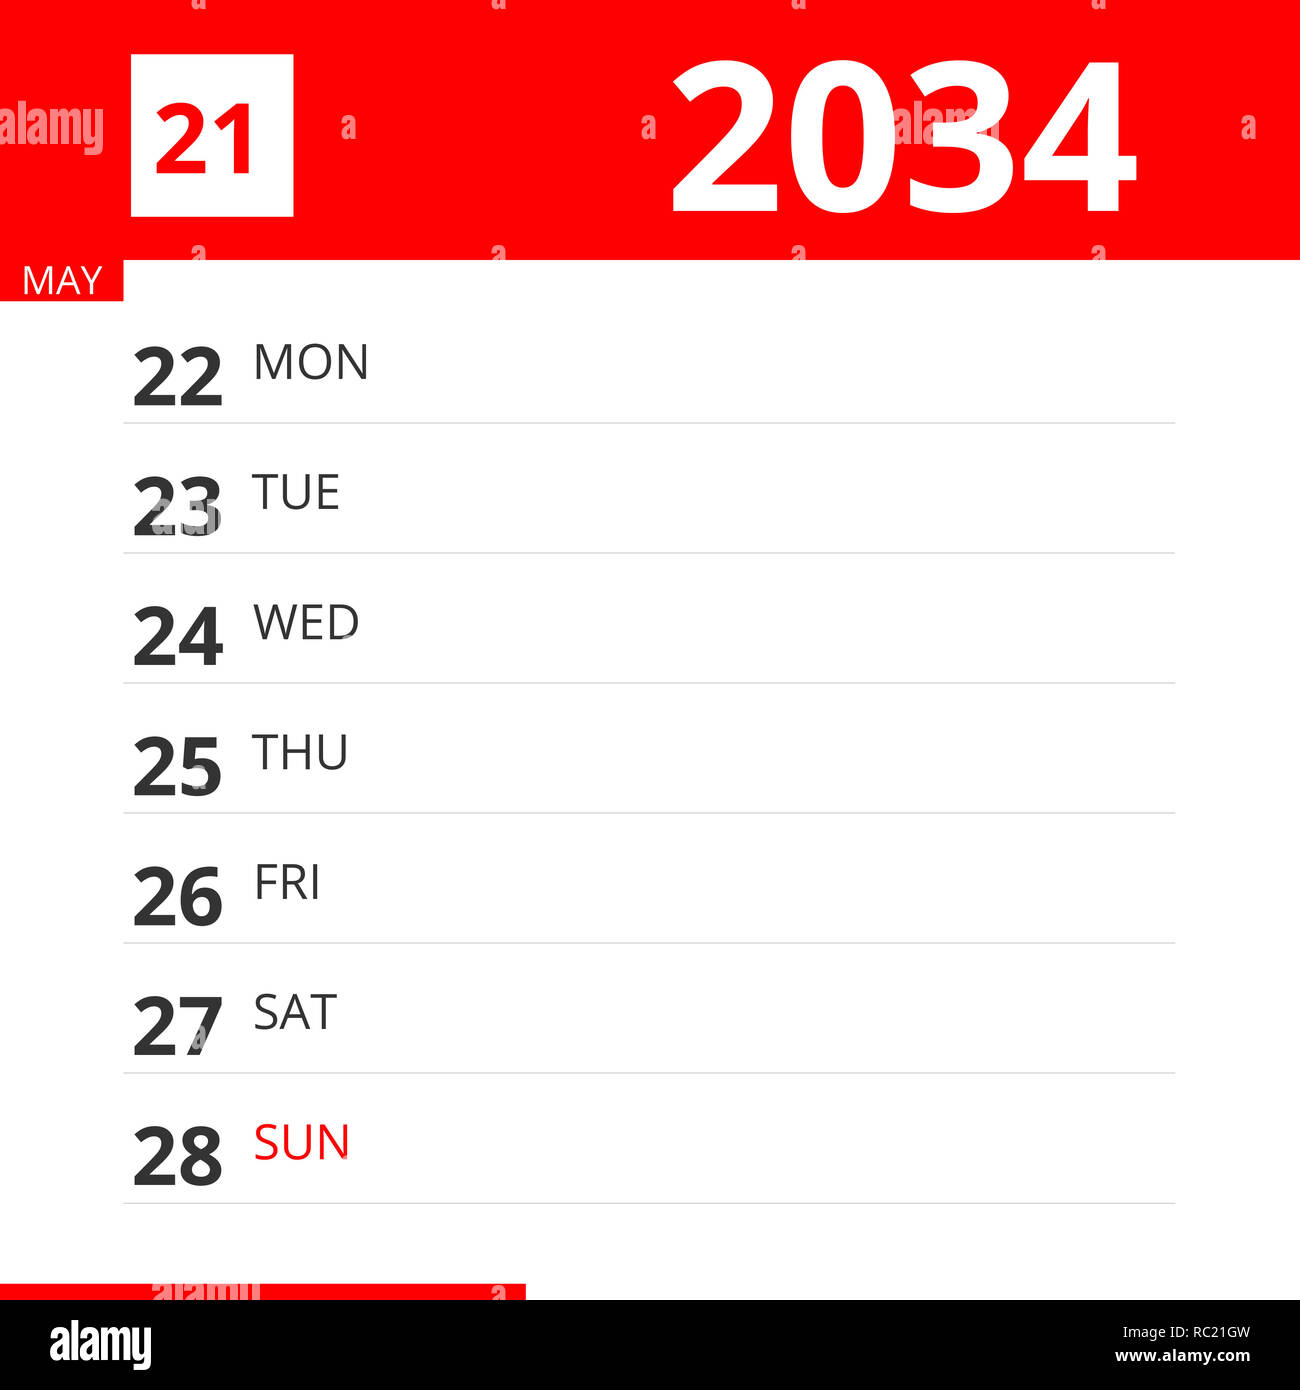 Semana 21 Calendario | Calendario Jul 2021 throughout Calendario Juliano 2022 Para Imprimir